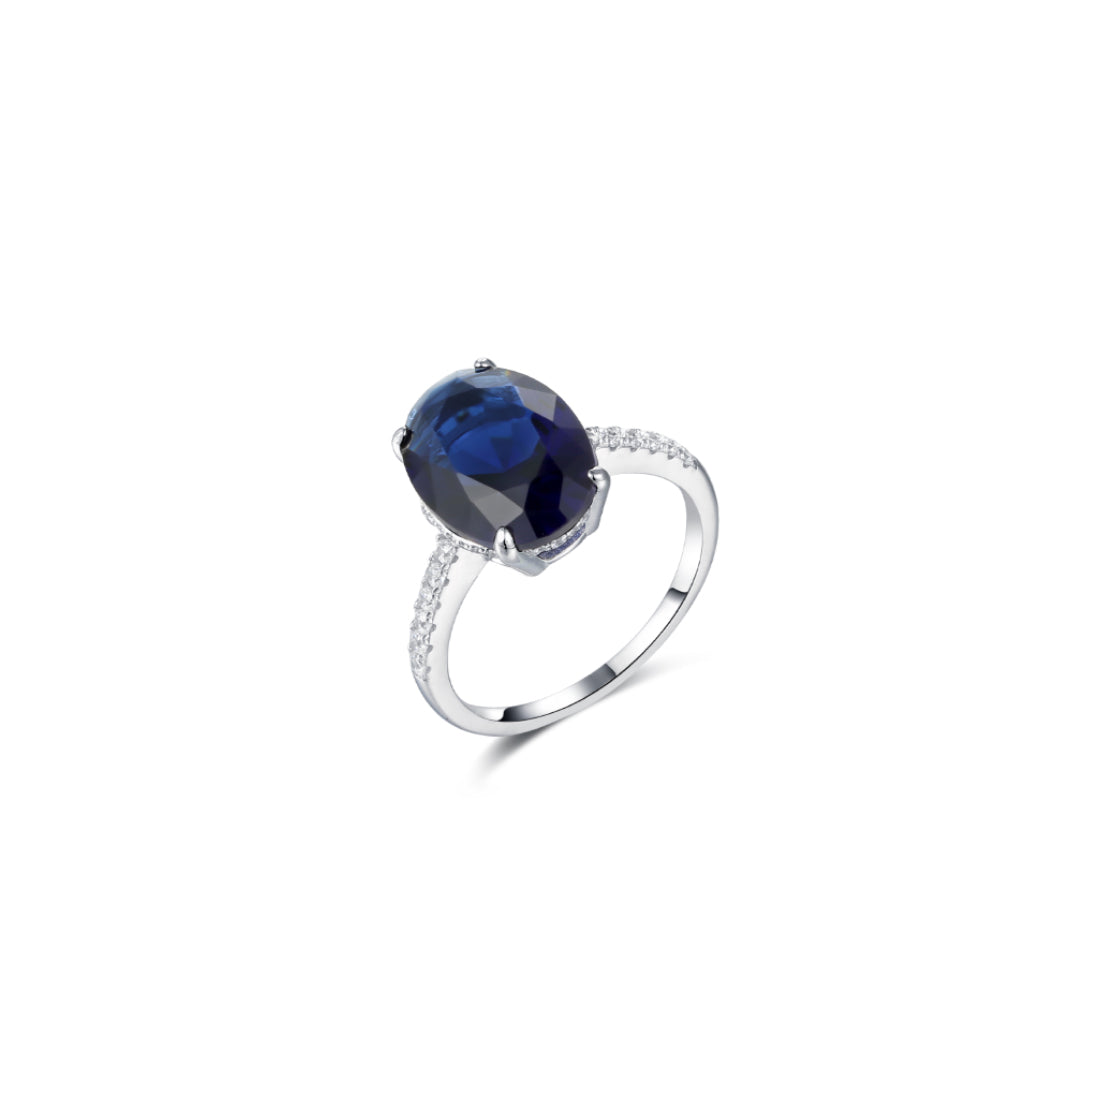 sibila-studio-anillo-deep-sea-con-piedra-central-en talla-oval-azul-zafiro--circonitas-blancas-laterales